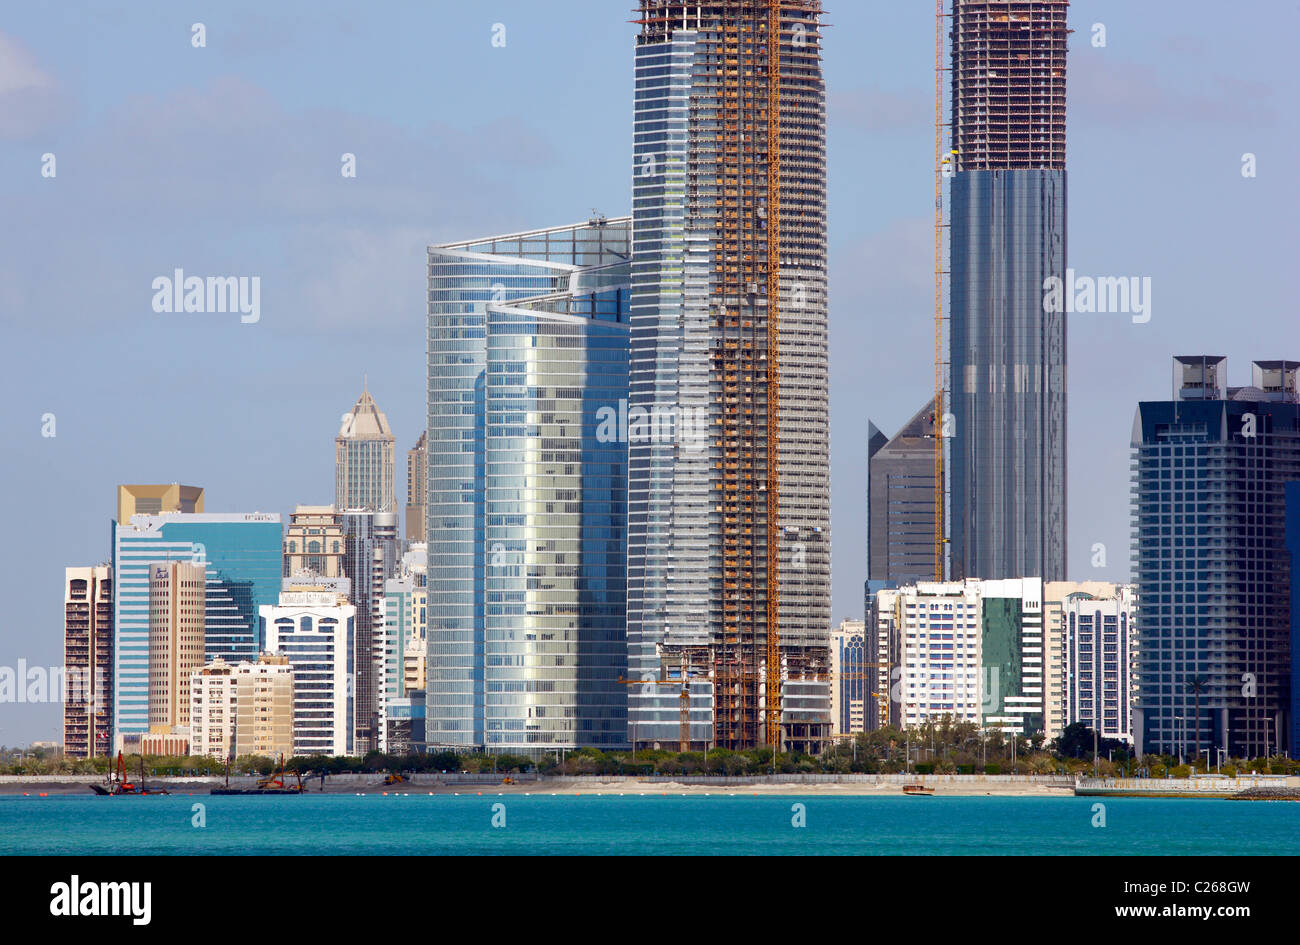 Skyline of Abu Dhabi, capital of United Arab Emirates. Stock Photo